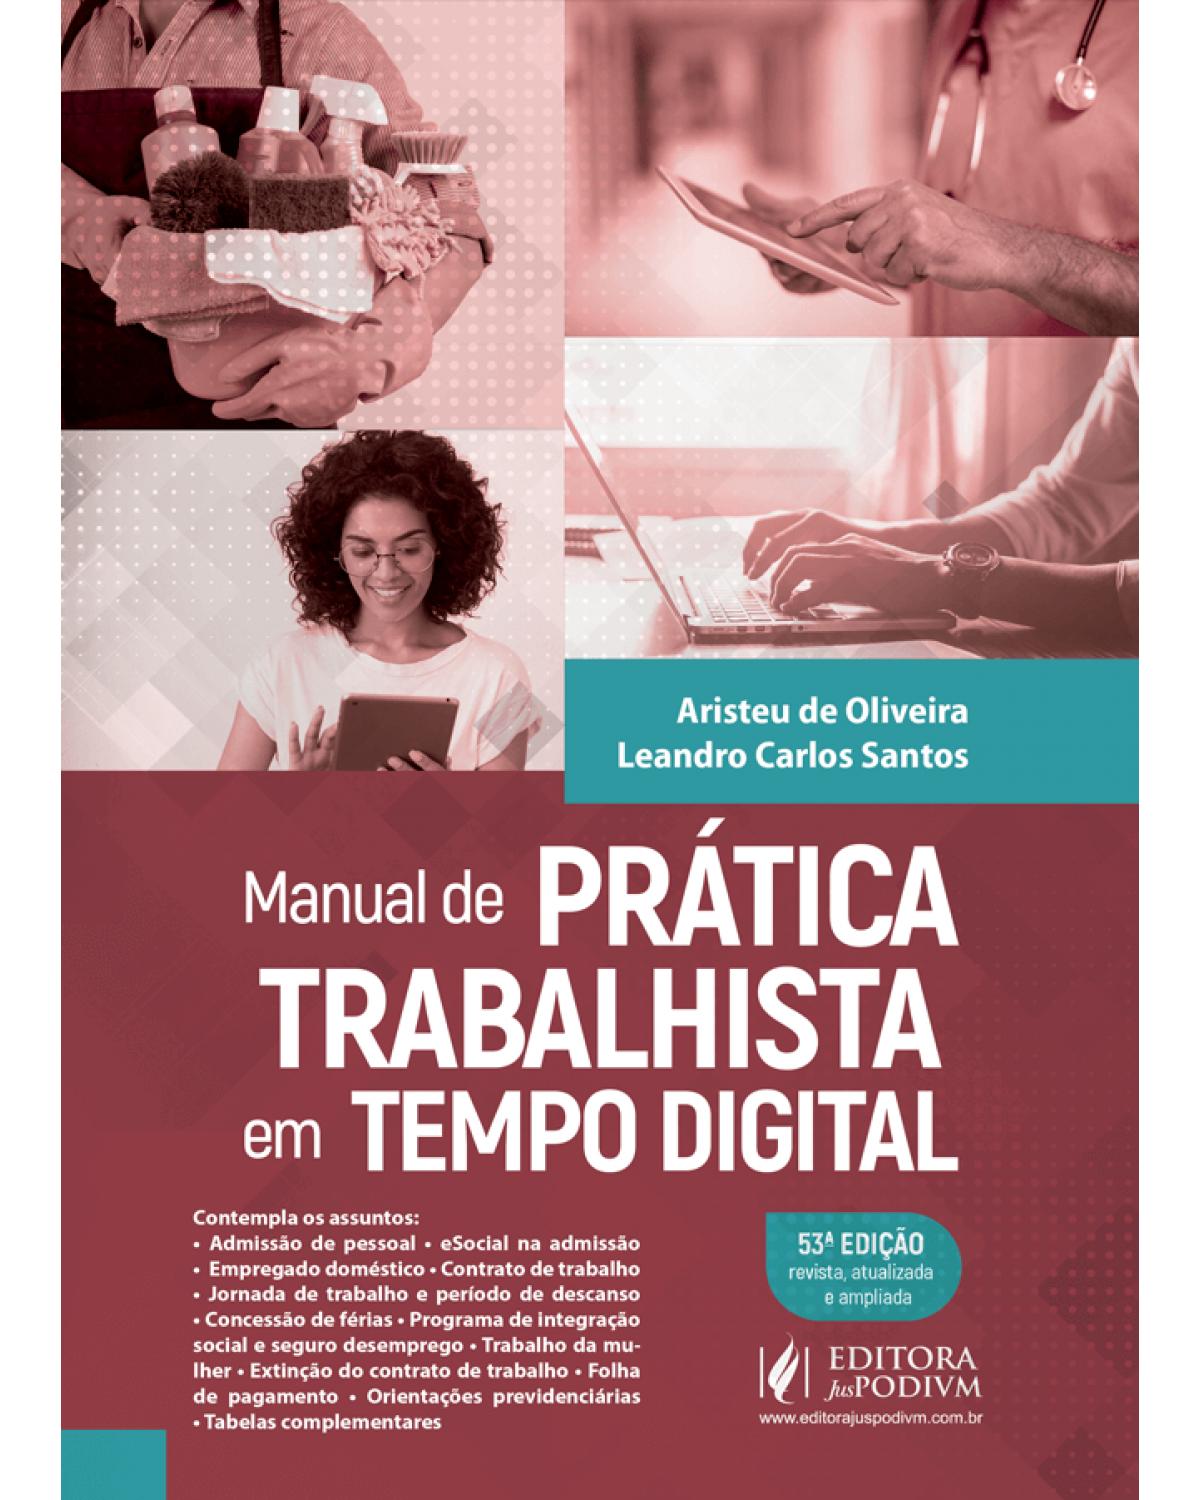 Manual de prática trabalhista em tempo digital - 53ª Edição | 2020